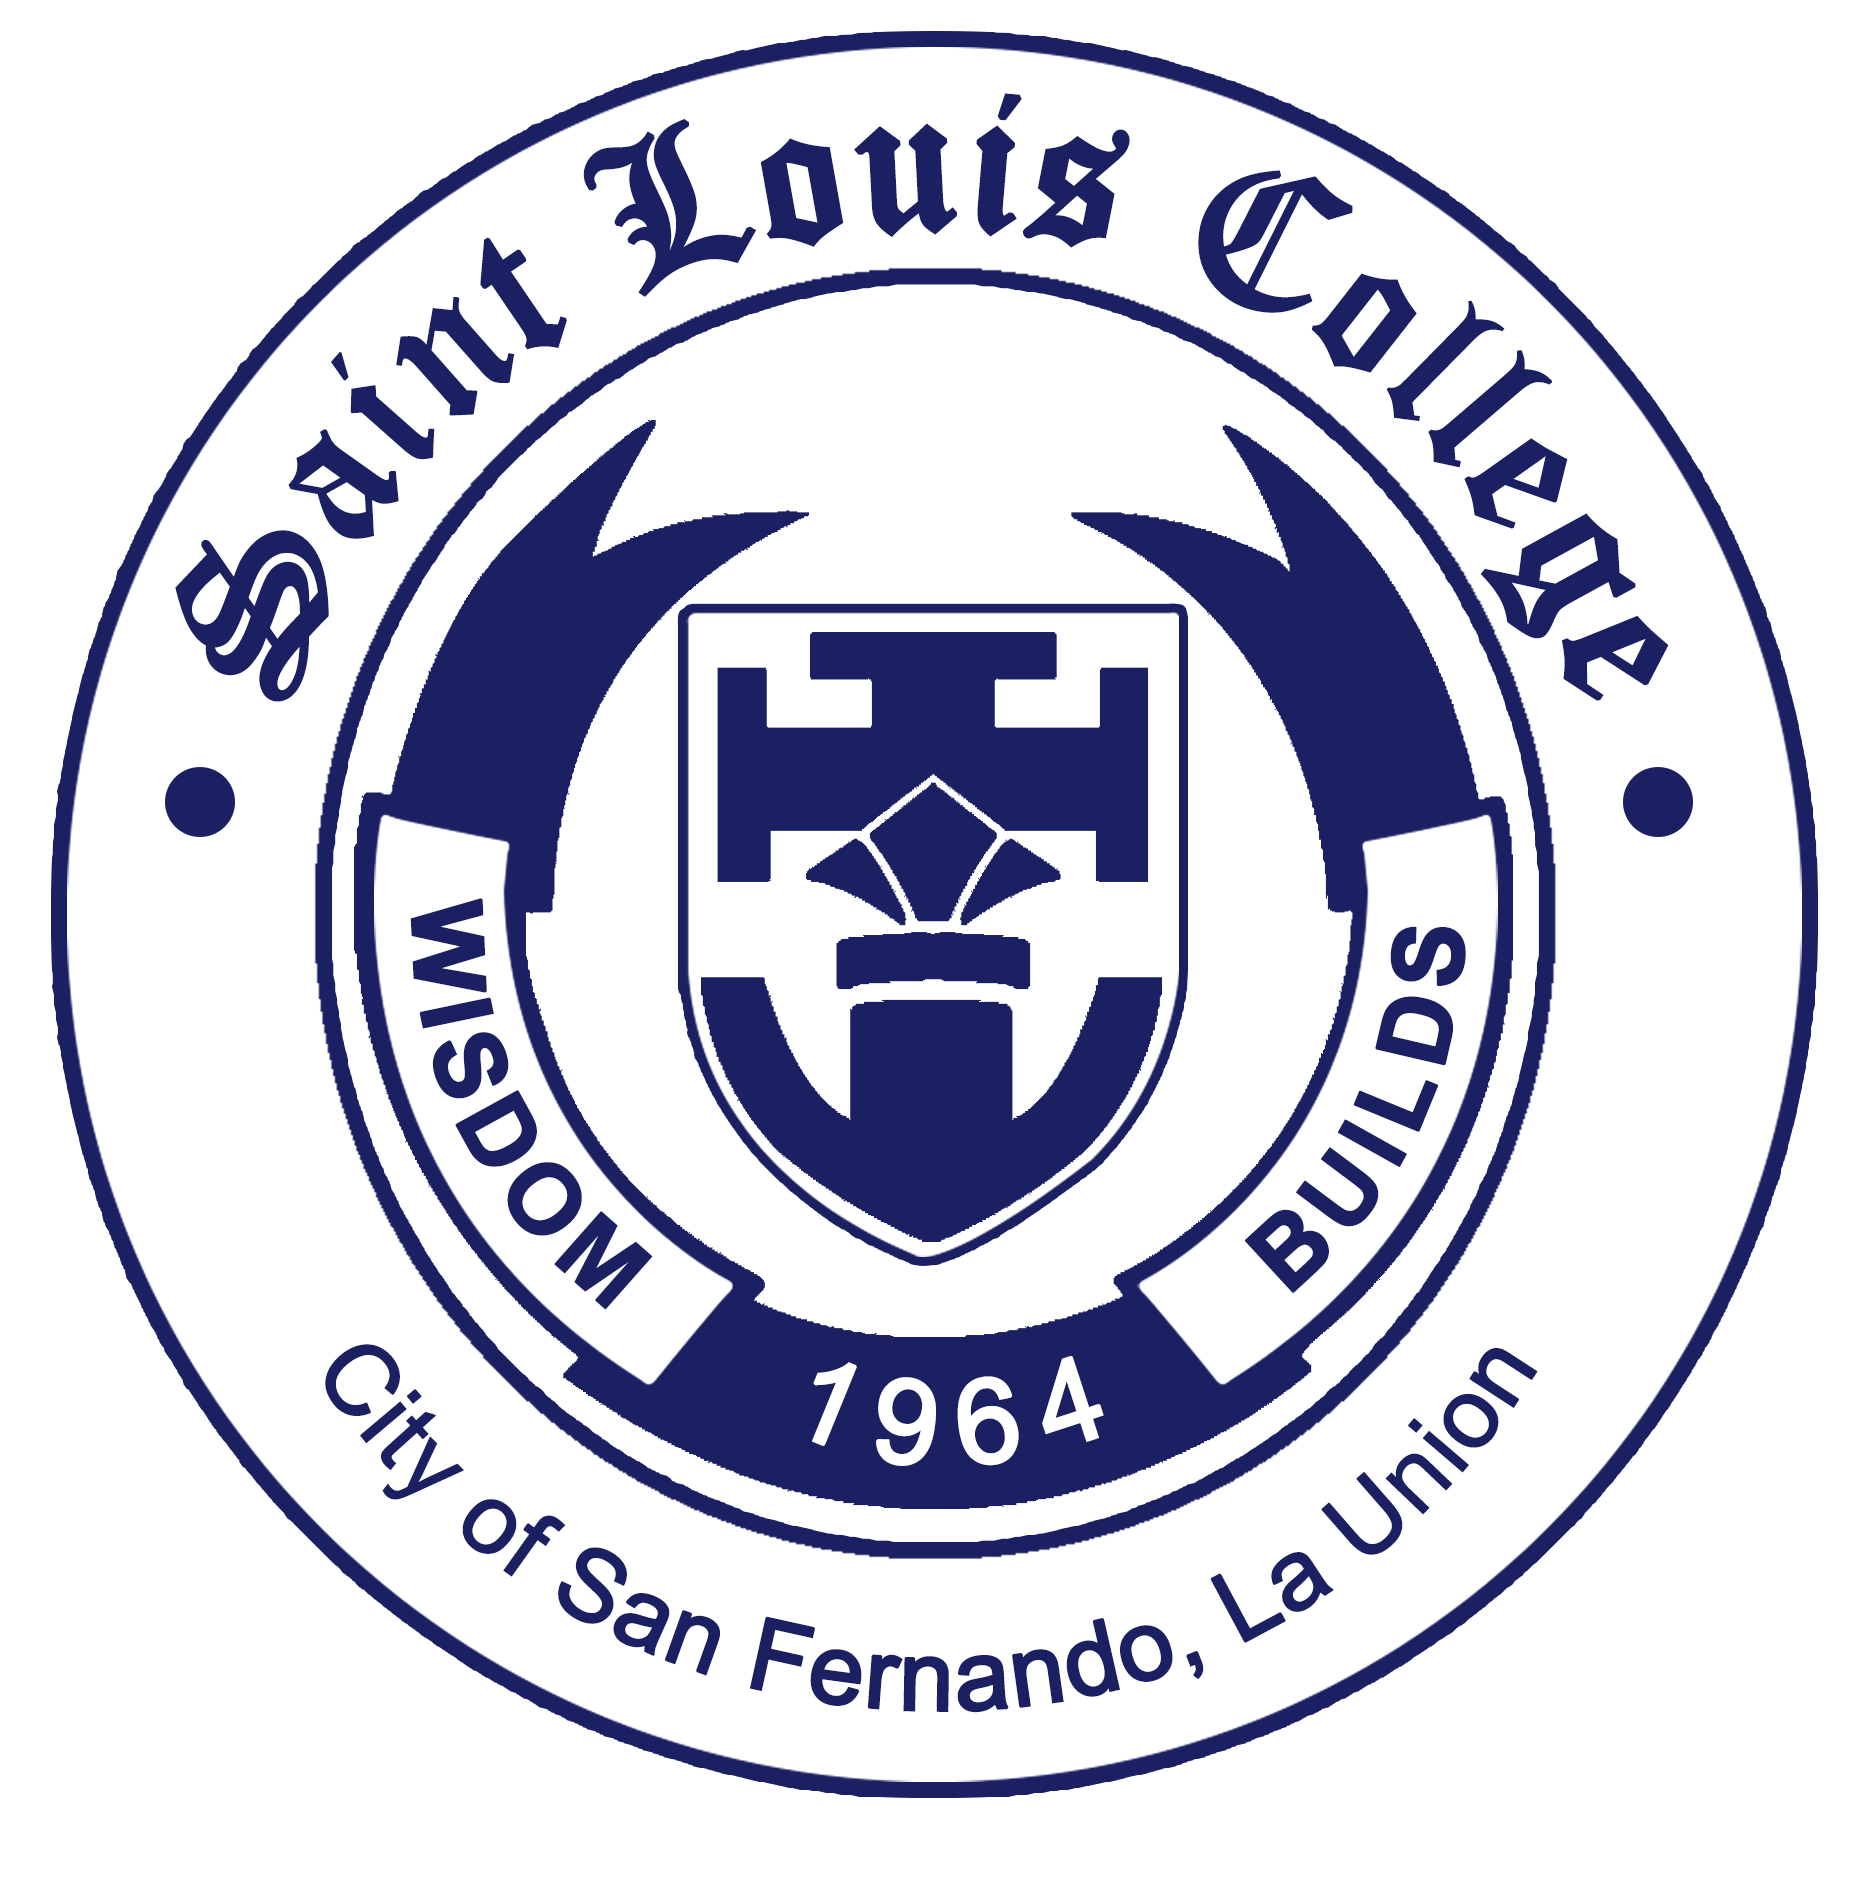 Saint Louis College | About Us